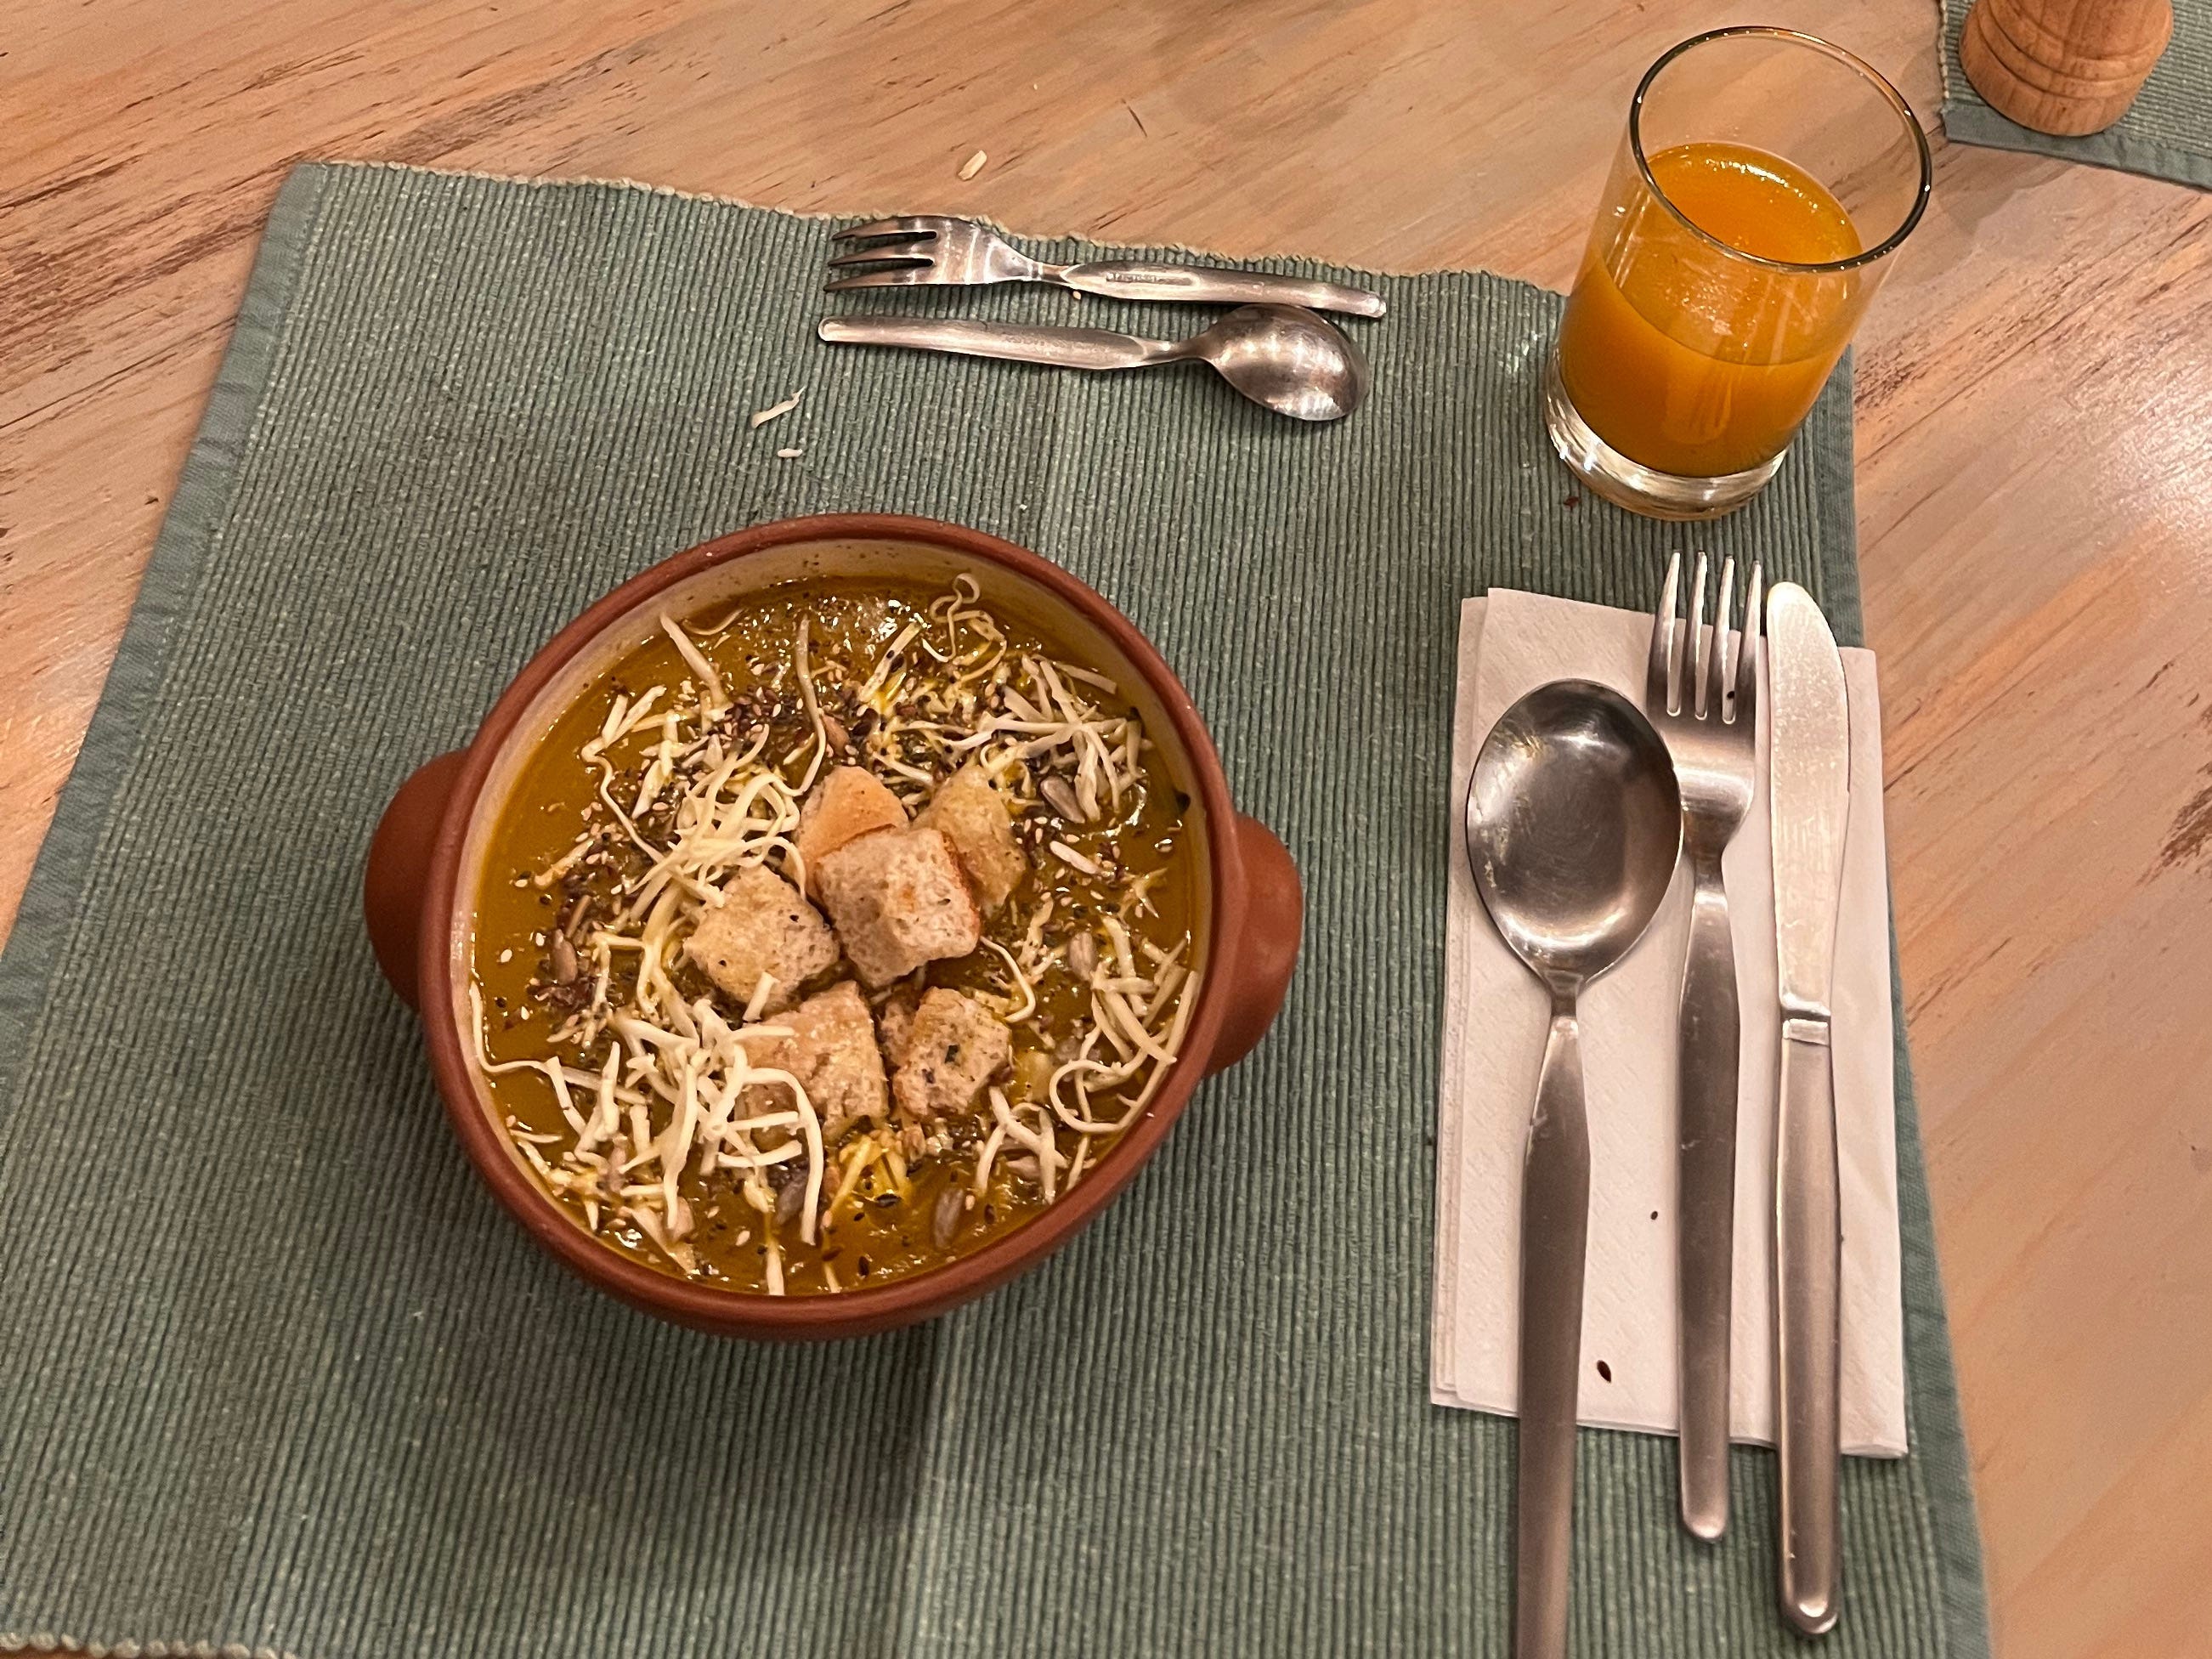 Eine Schüssel Suppe und Besteck auf einem blaugrünen Tischset.